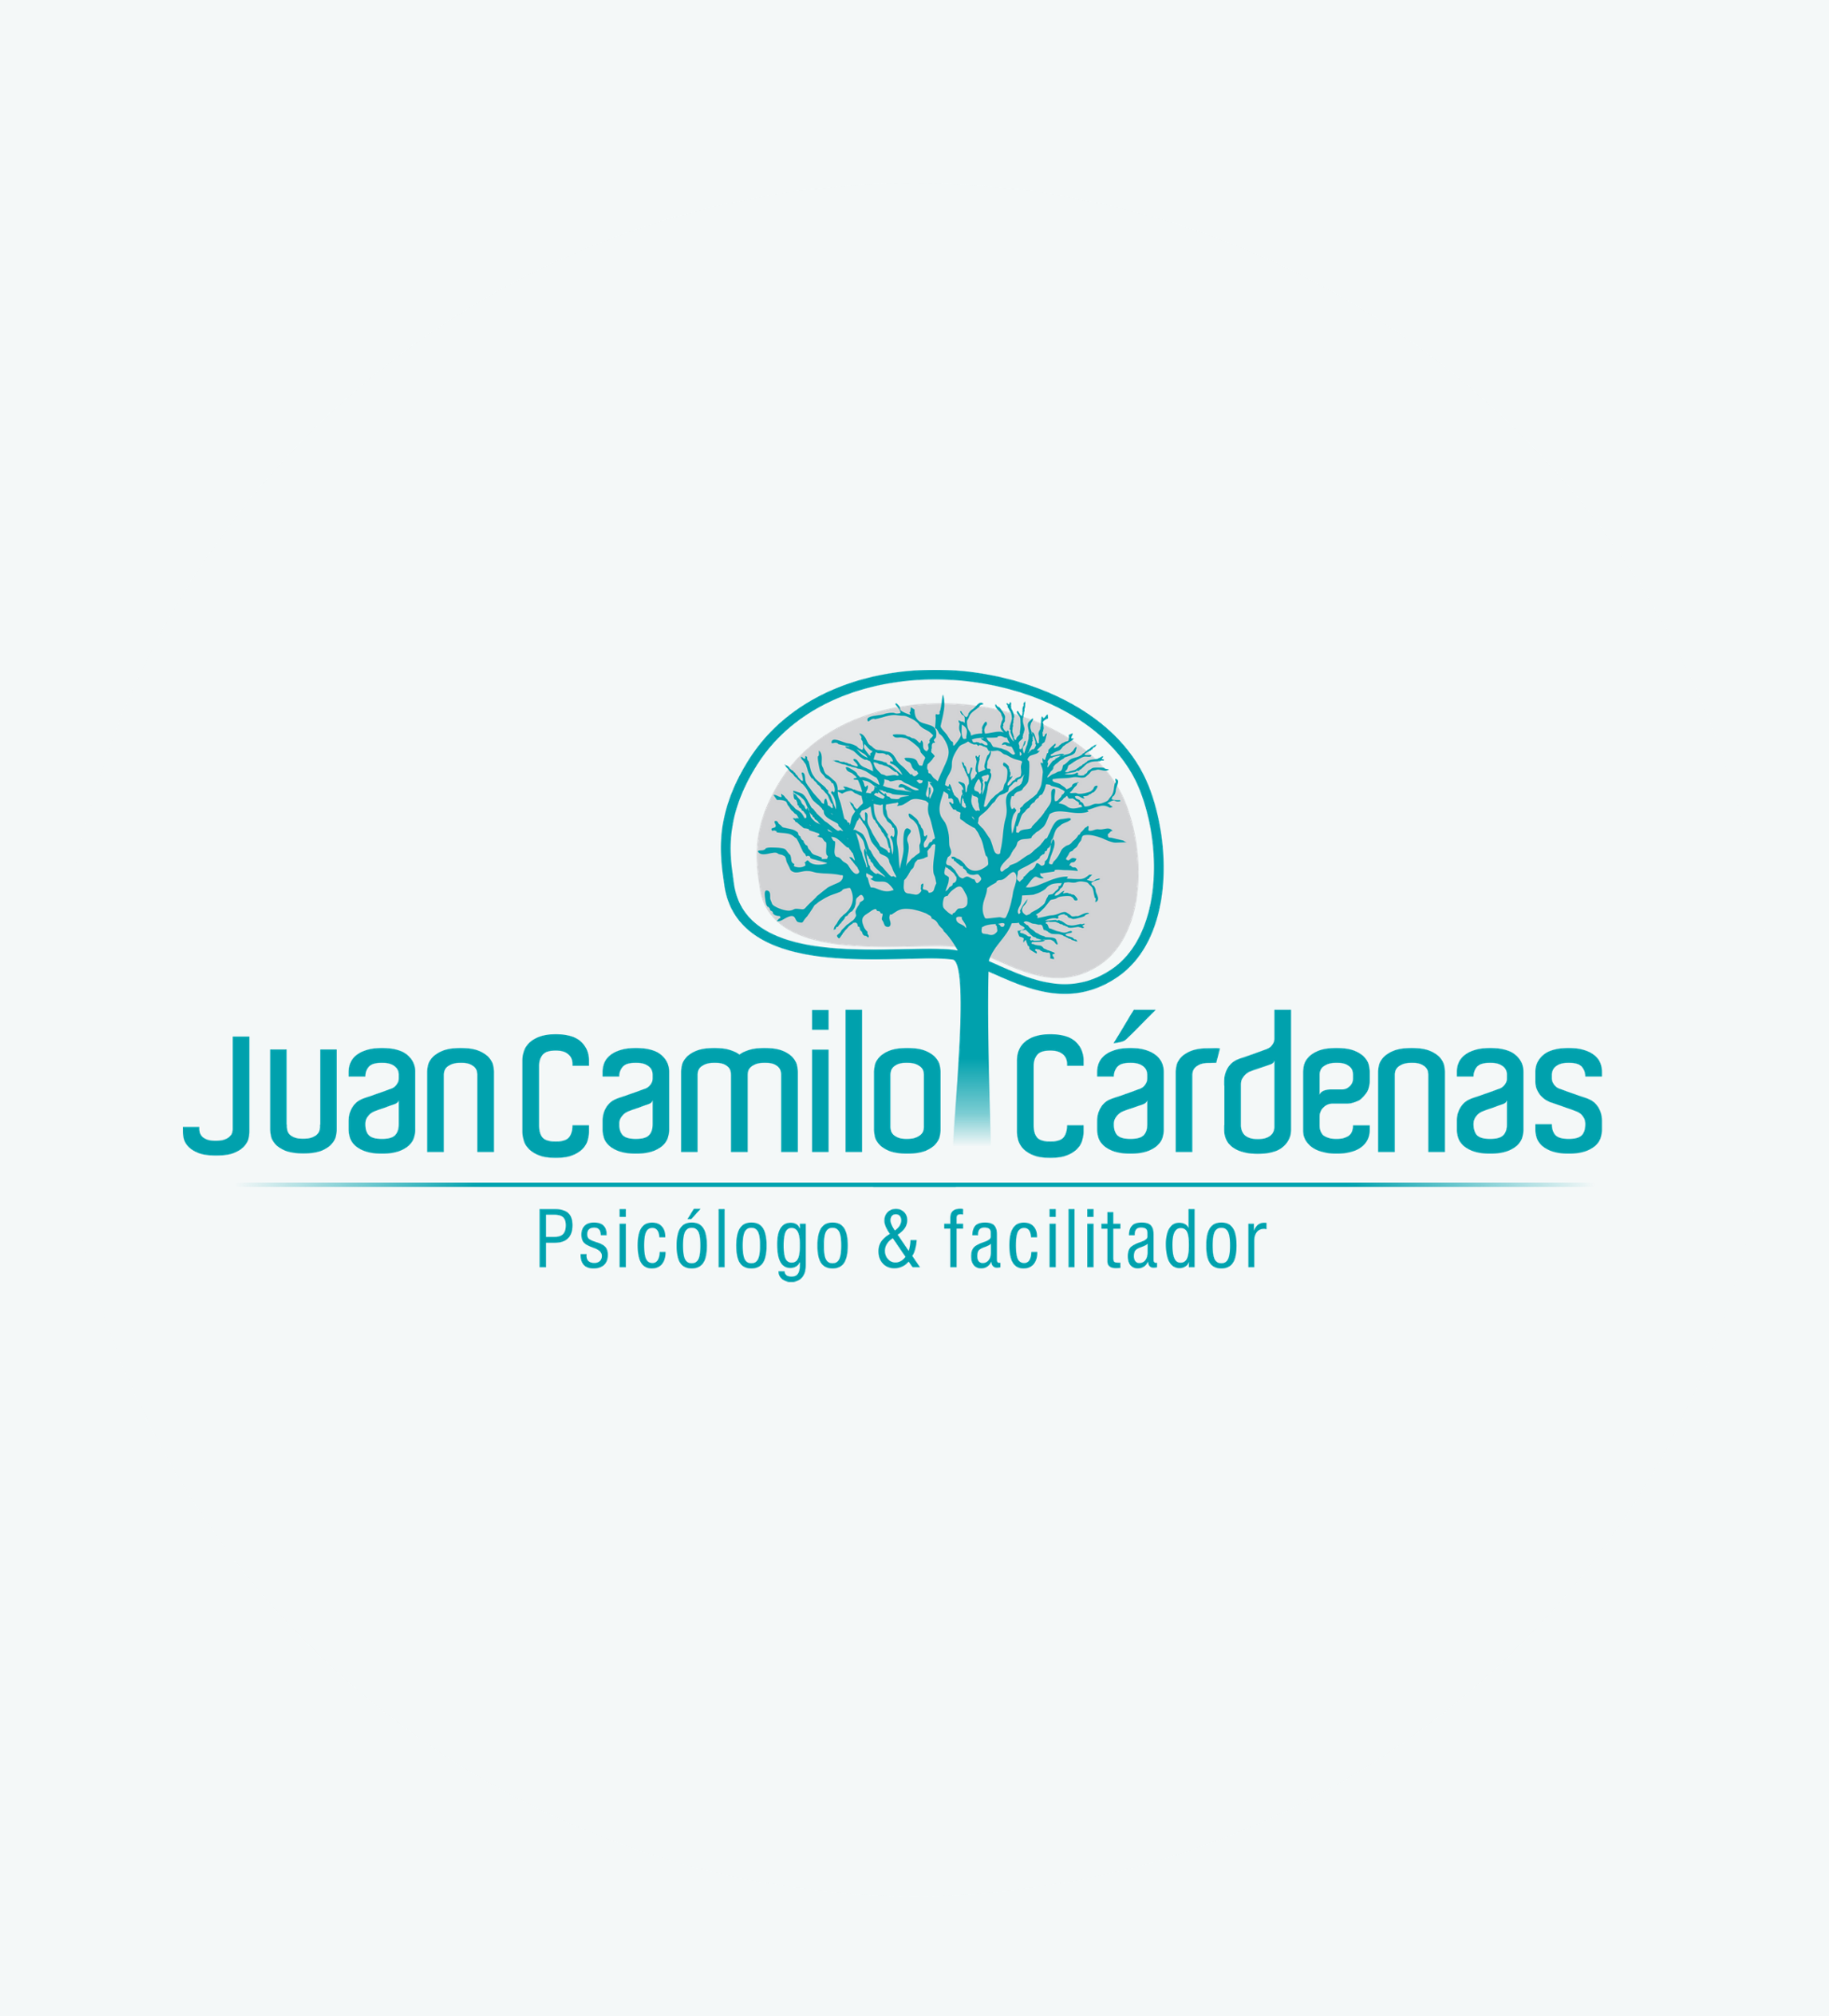 Juan Camilo Cardenas